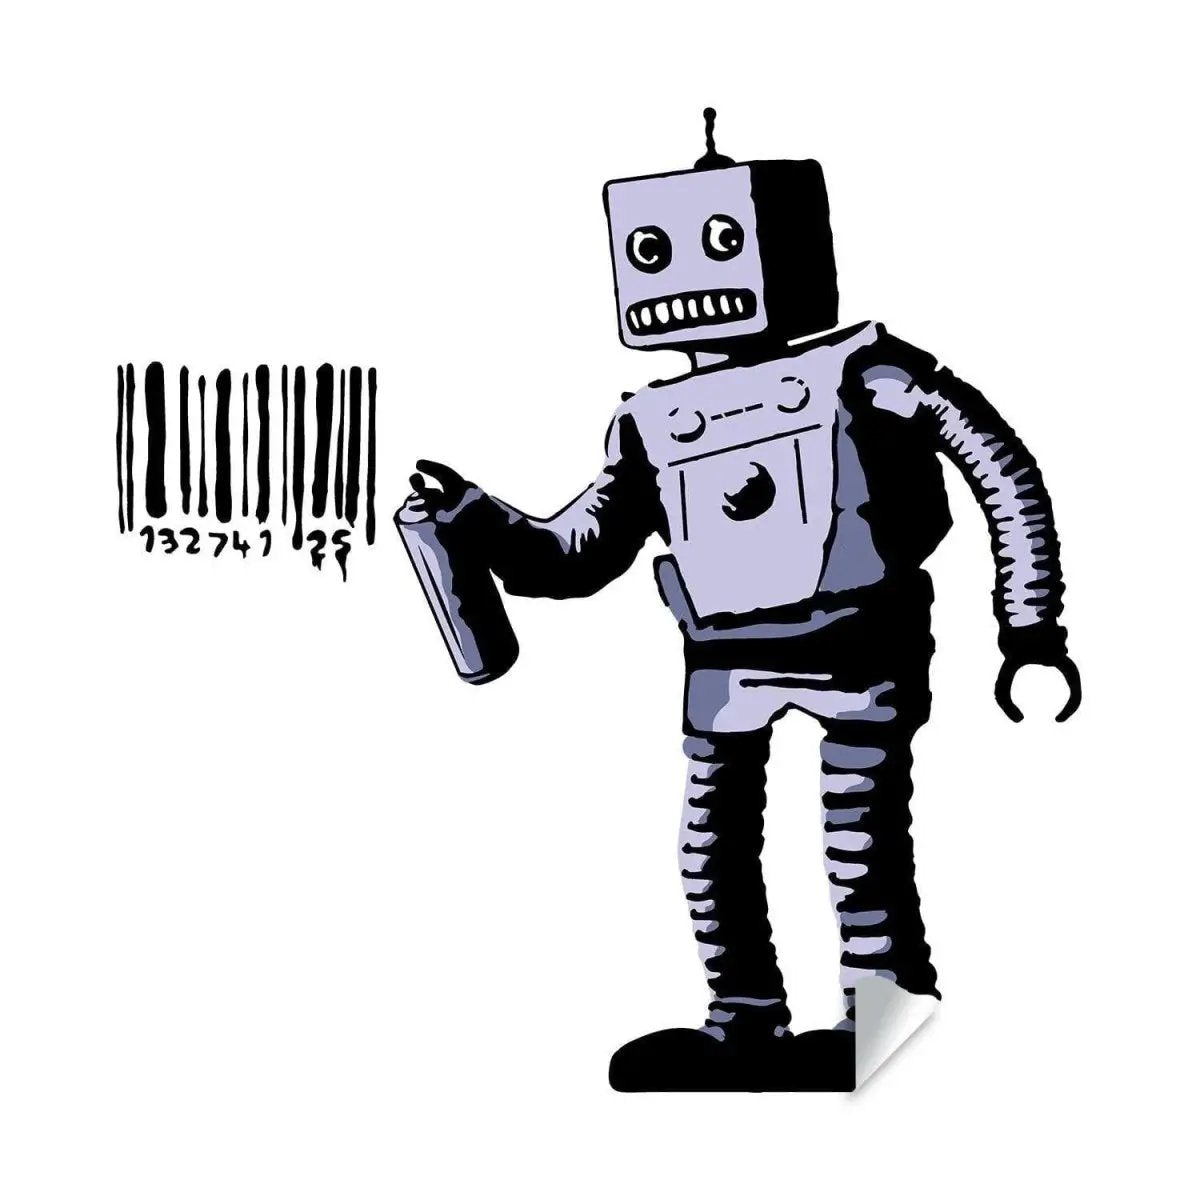 Barcode Robot Wall Vinyl Sticker - Urban Street Art Decal